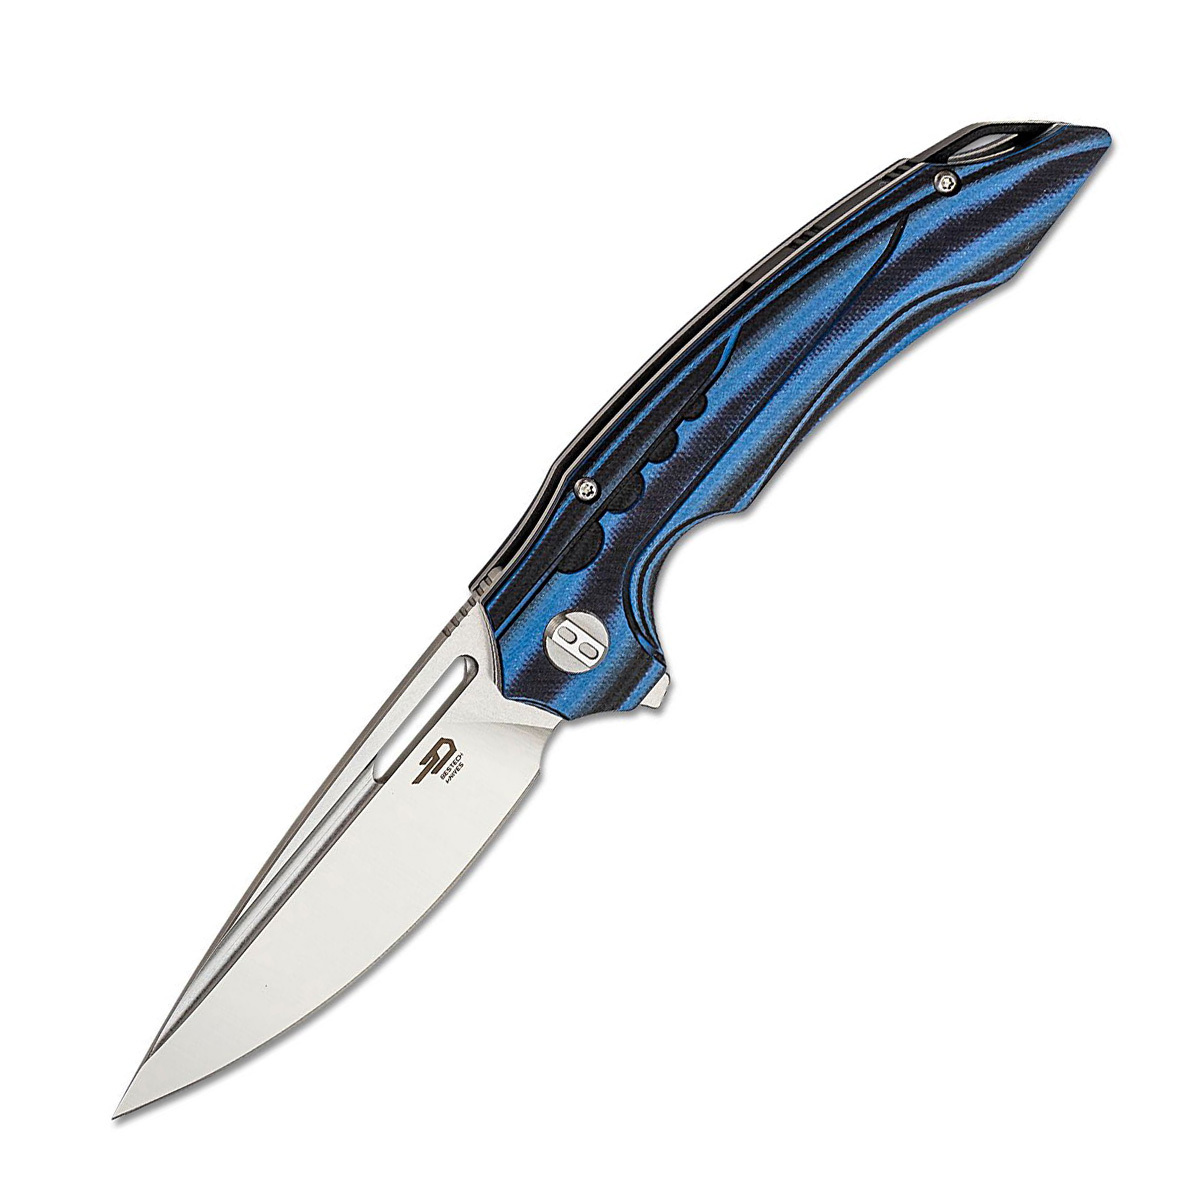 Складной нож Bestech Ornetta, сталь N690, рукоять черно-синяя G10/карбон складной нож bestech knives ascot d2 черно красный карбон